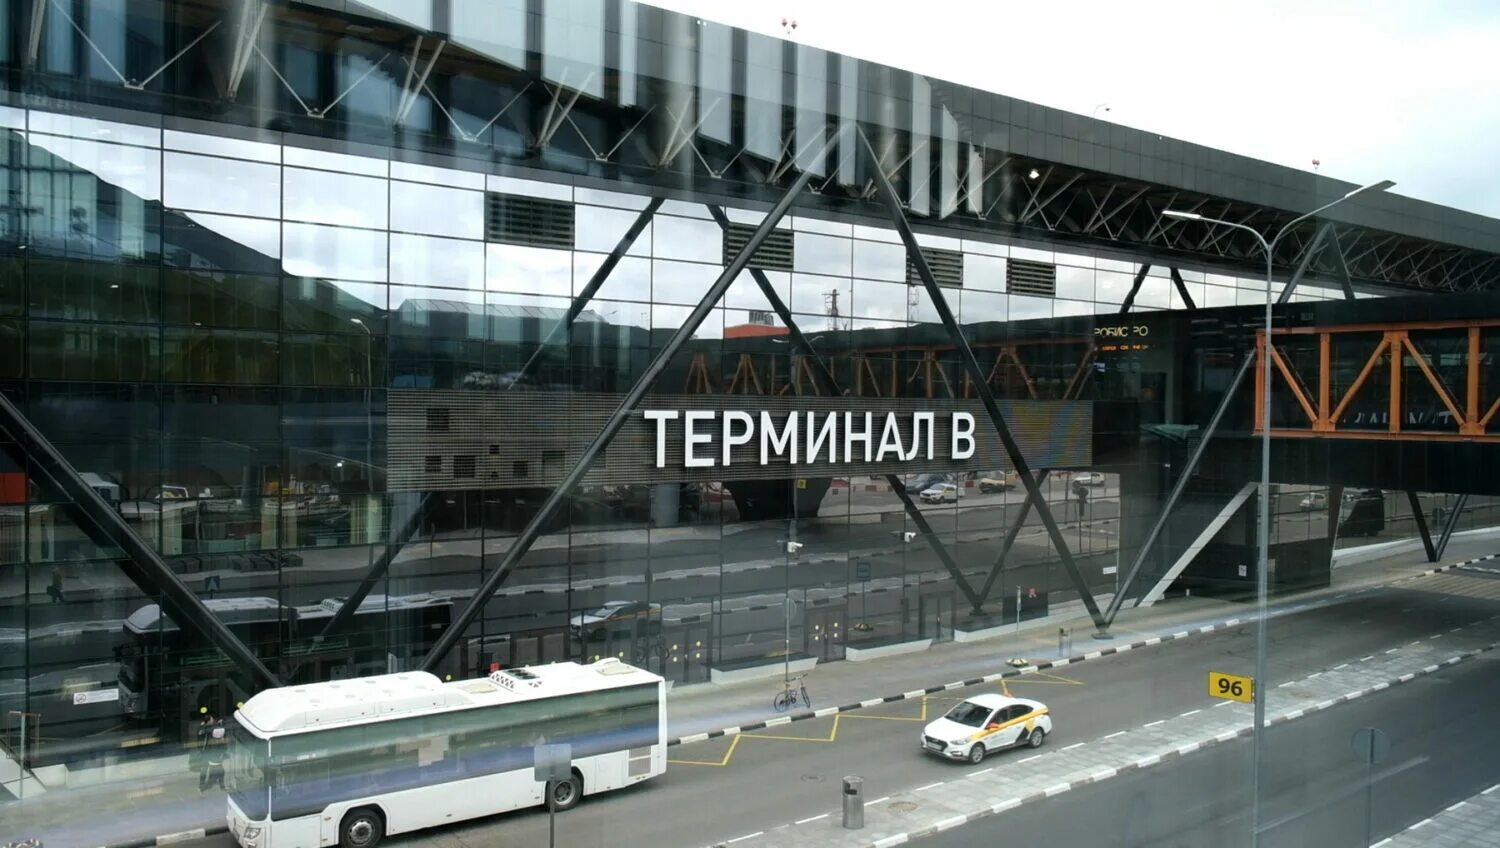 ЖД терминал в Шереметьево. Шереметьево терминал b. Шереметьево новый терминал. Шереметьево Аэроэкспресс Железнодорожный терминал. Аэроэкспресс терминал b